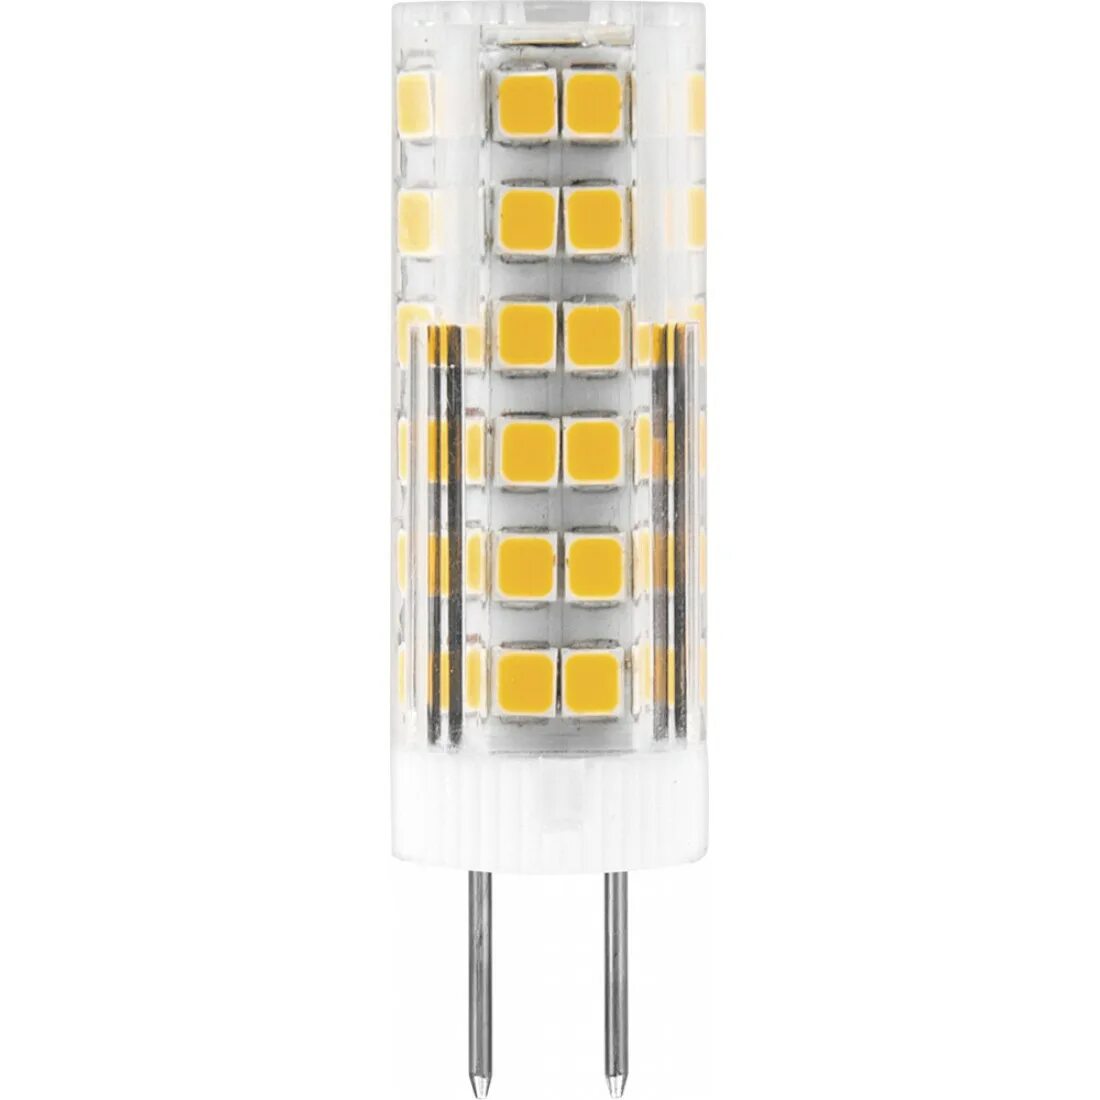 Лампа Feron lb-433 светодиодная 7w. Лампа светодиодная Feron lb-432 g9 5w 4000k. Lb-433 лампа светодиодная, (7w) 230v g9 4000k jcd9. Светодиодная лампа Feron g4 7w 6400k. Светодиодная лампа недорого